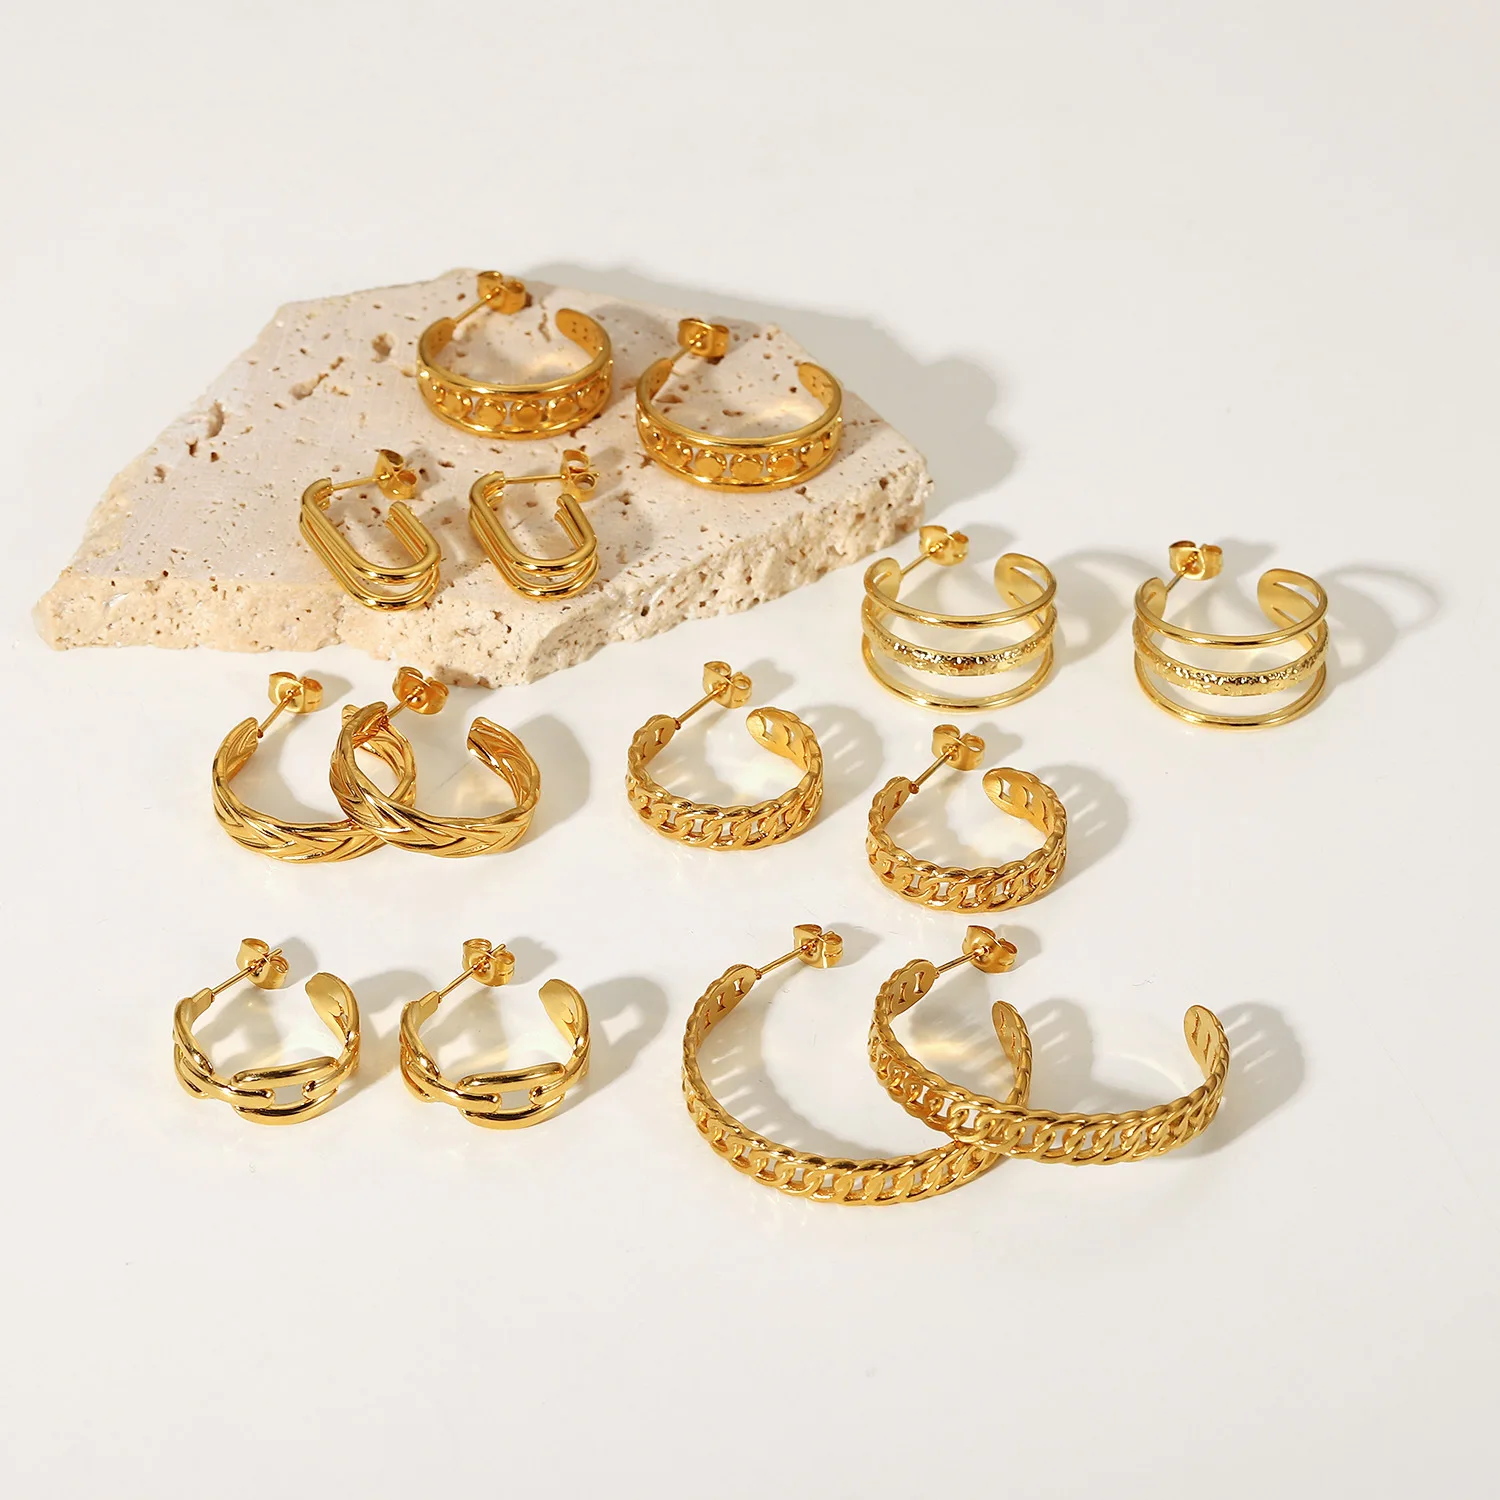 

EH22312 Europe&American Amazon Hot Fashion Jewelry Twist C-shape 18K Gold Stainless Steel Hoop Earrings Women Aretes